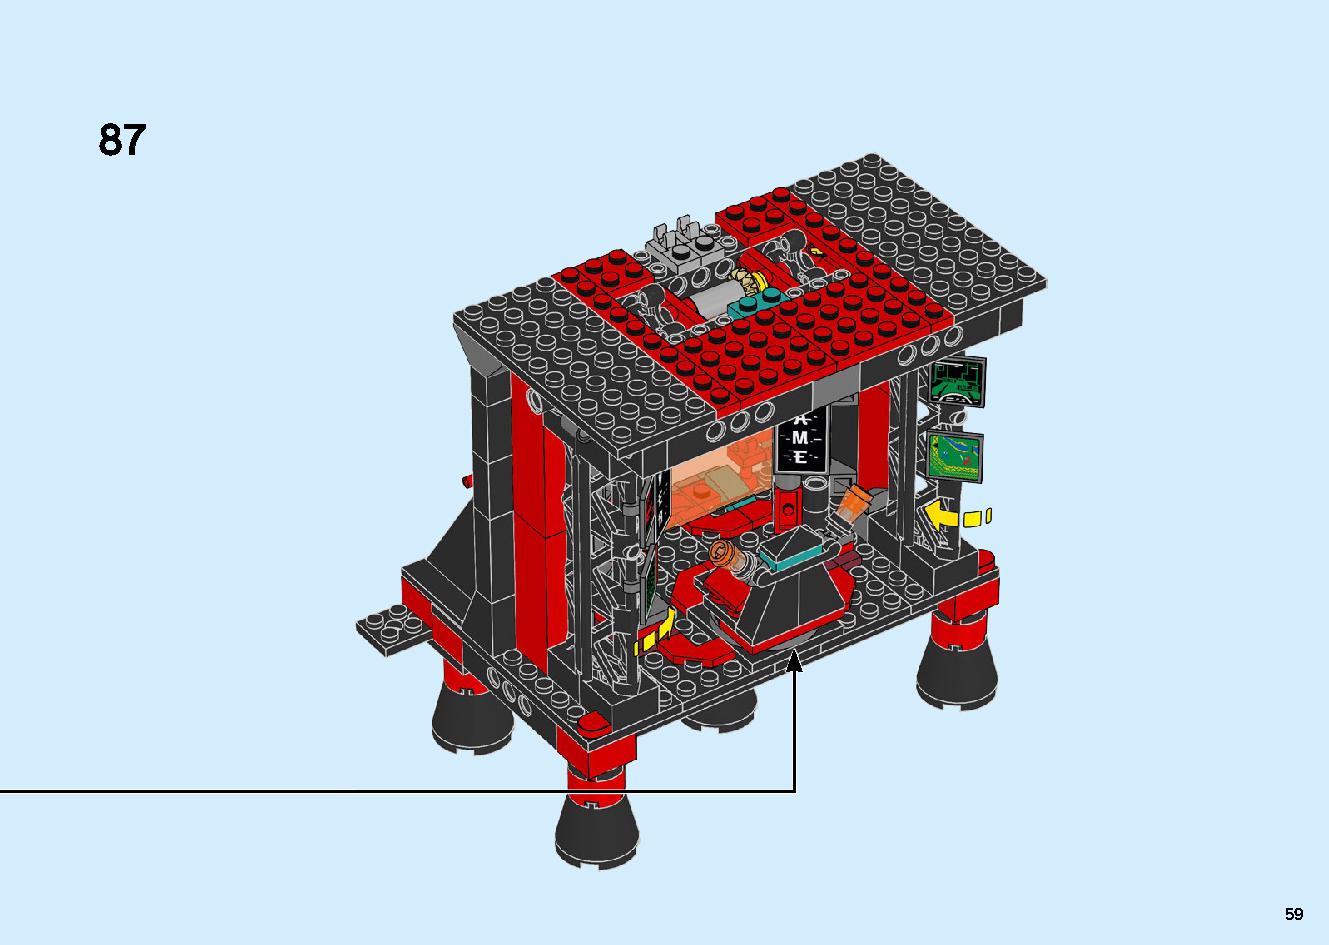 マッドキング神殿 71712 レゴの商品情報 レゴの説明書・組立方法 59 page